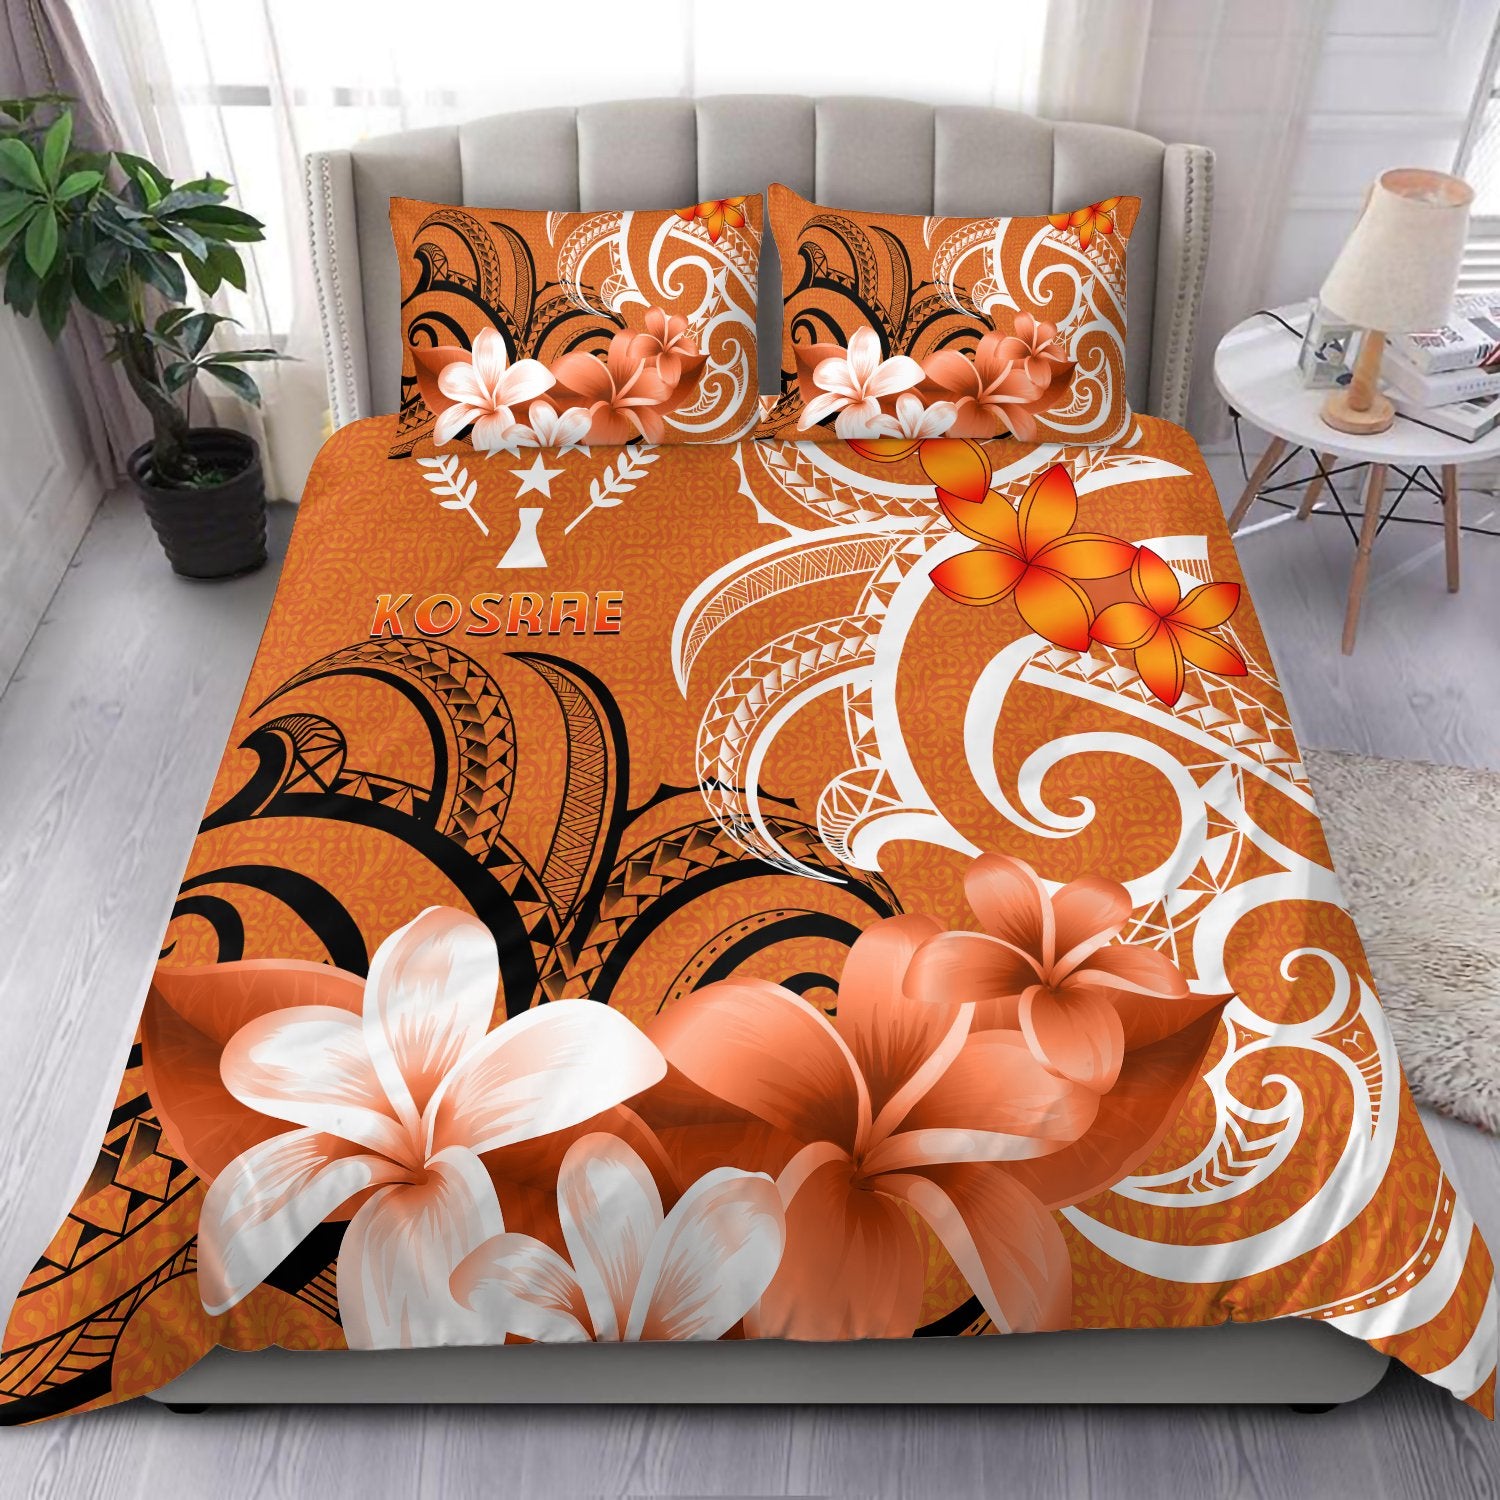 Kosrae Bedding Set - Kosrae Spirit Orange - Polynesian Pride